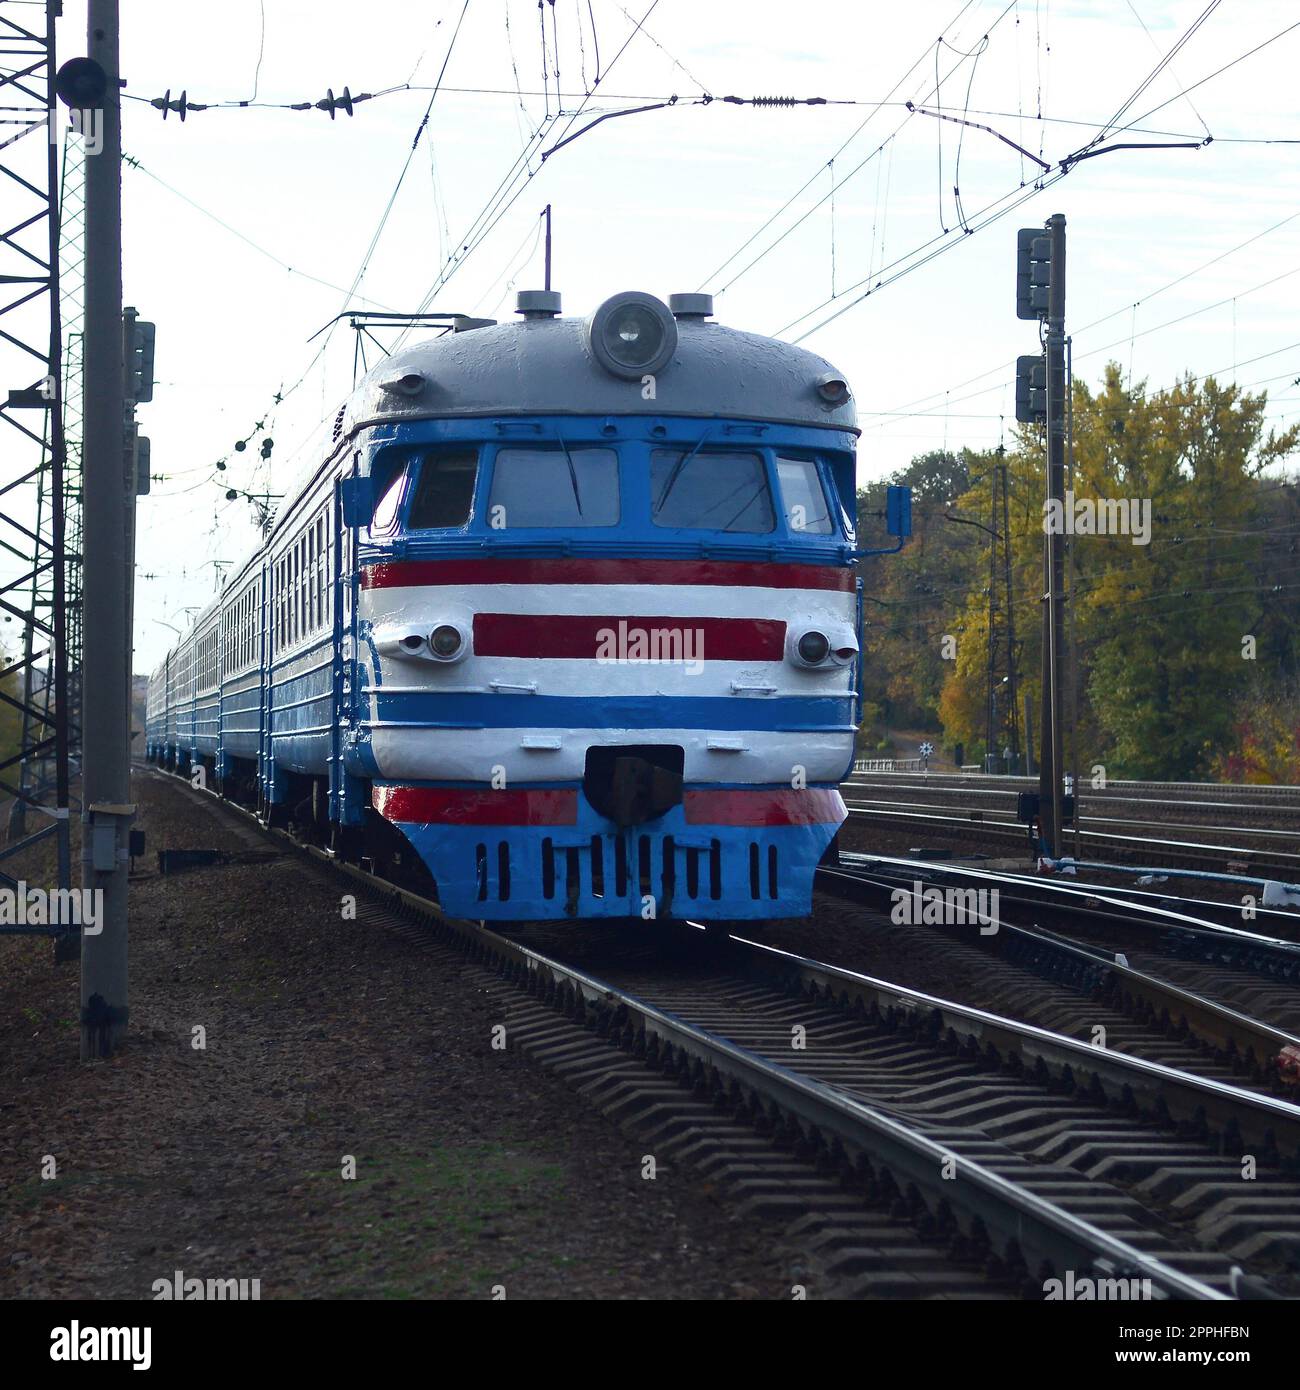 Alte sowjetische elektrische Eisenbahn mit veraltetem Design, die per Bahn fährt Stockfoto